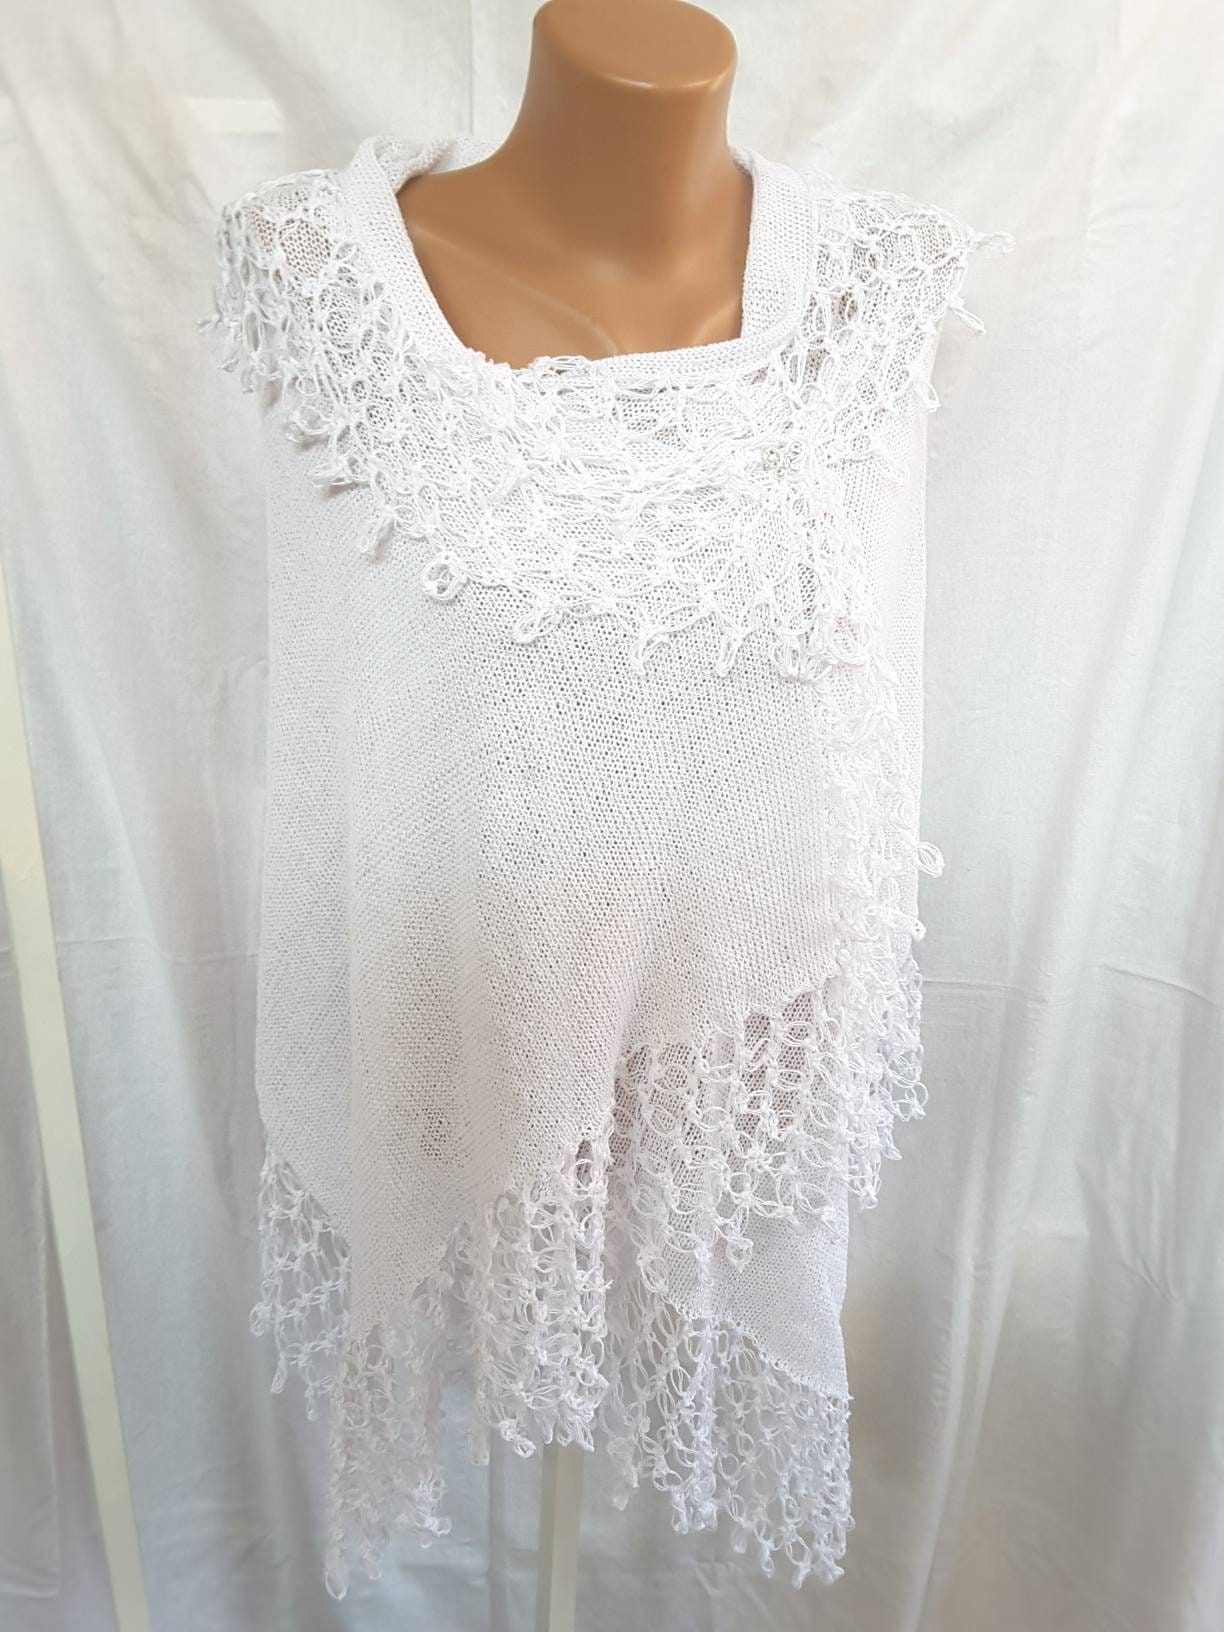 White Lace Shawl Knitted Poncho Wedding Shawl Wrap Cotton - Etsy